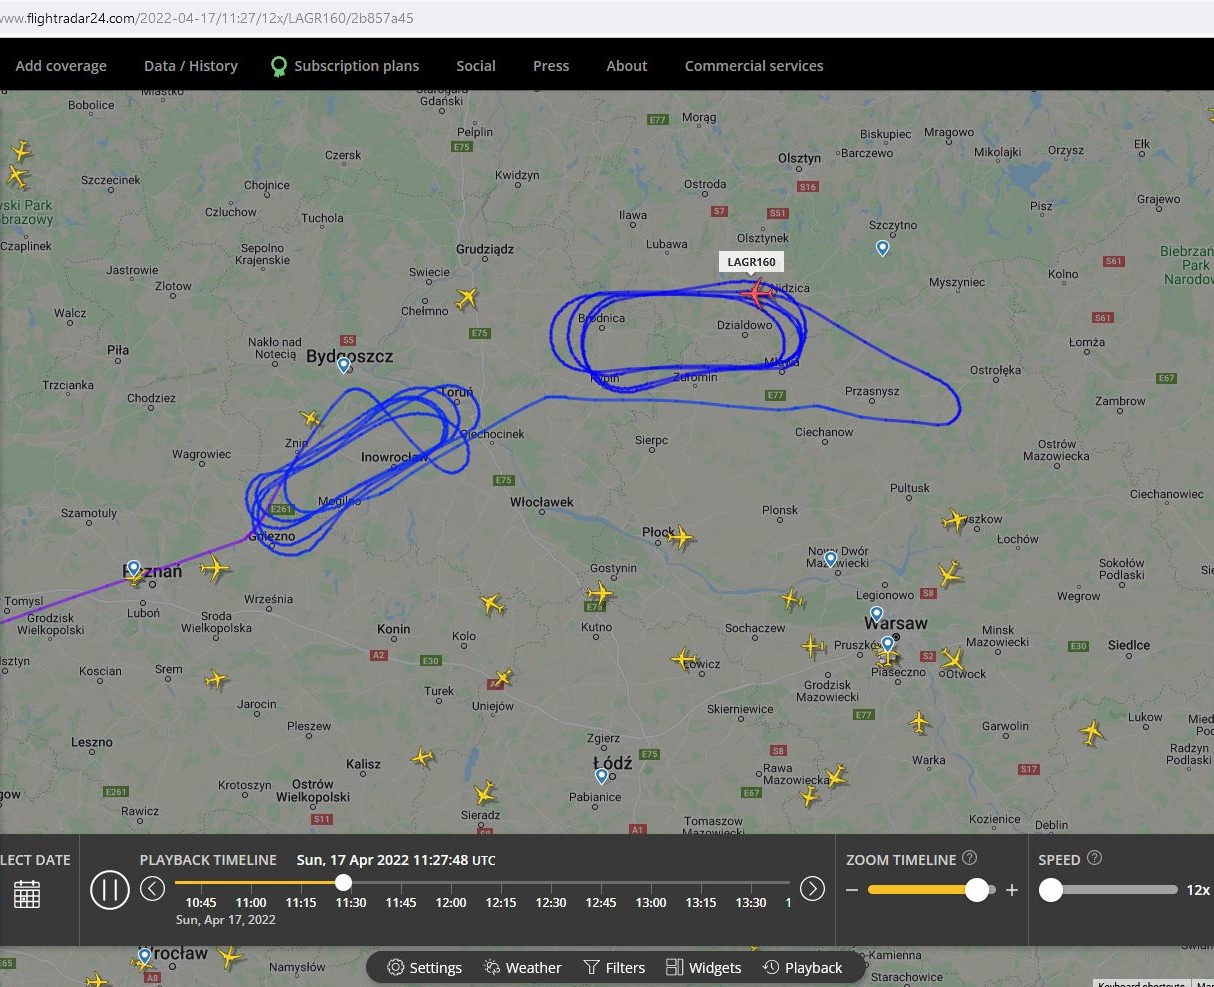 Ruch na polskim niebie ledzi mona na oglnodostpnych  stronach, np. FlightRadar24.